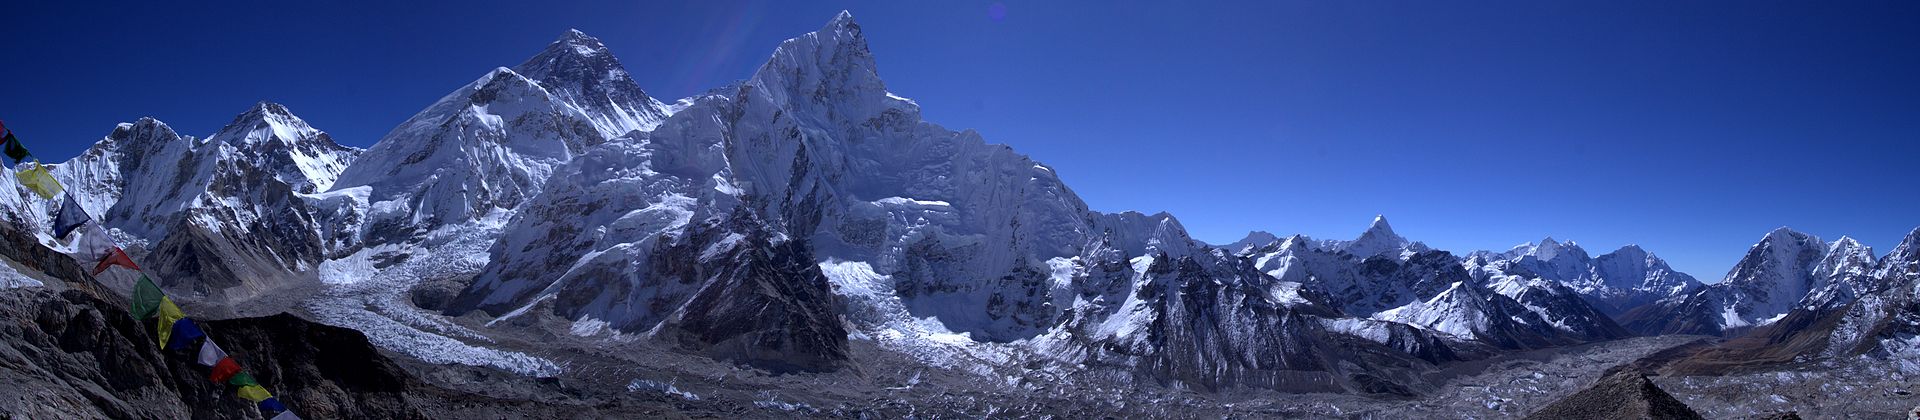 Everest View form Kala Patthar